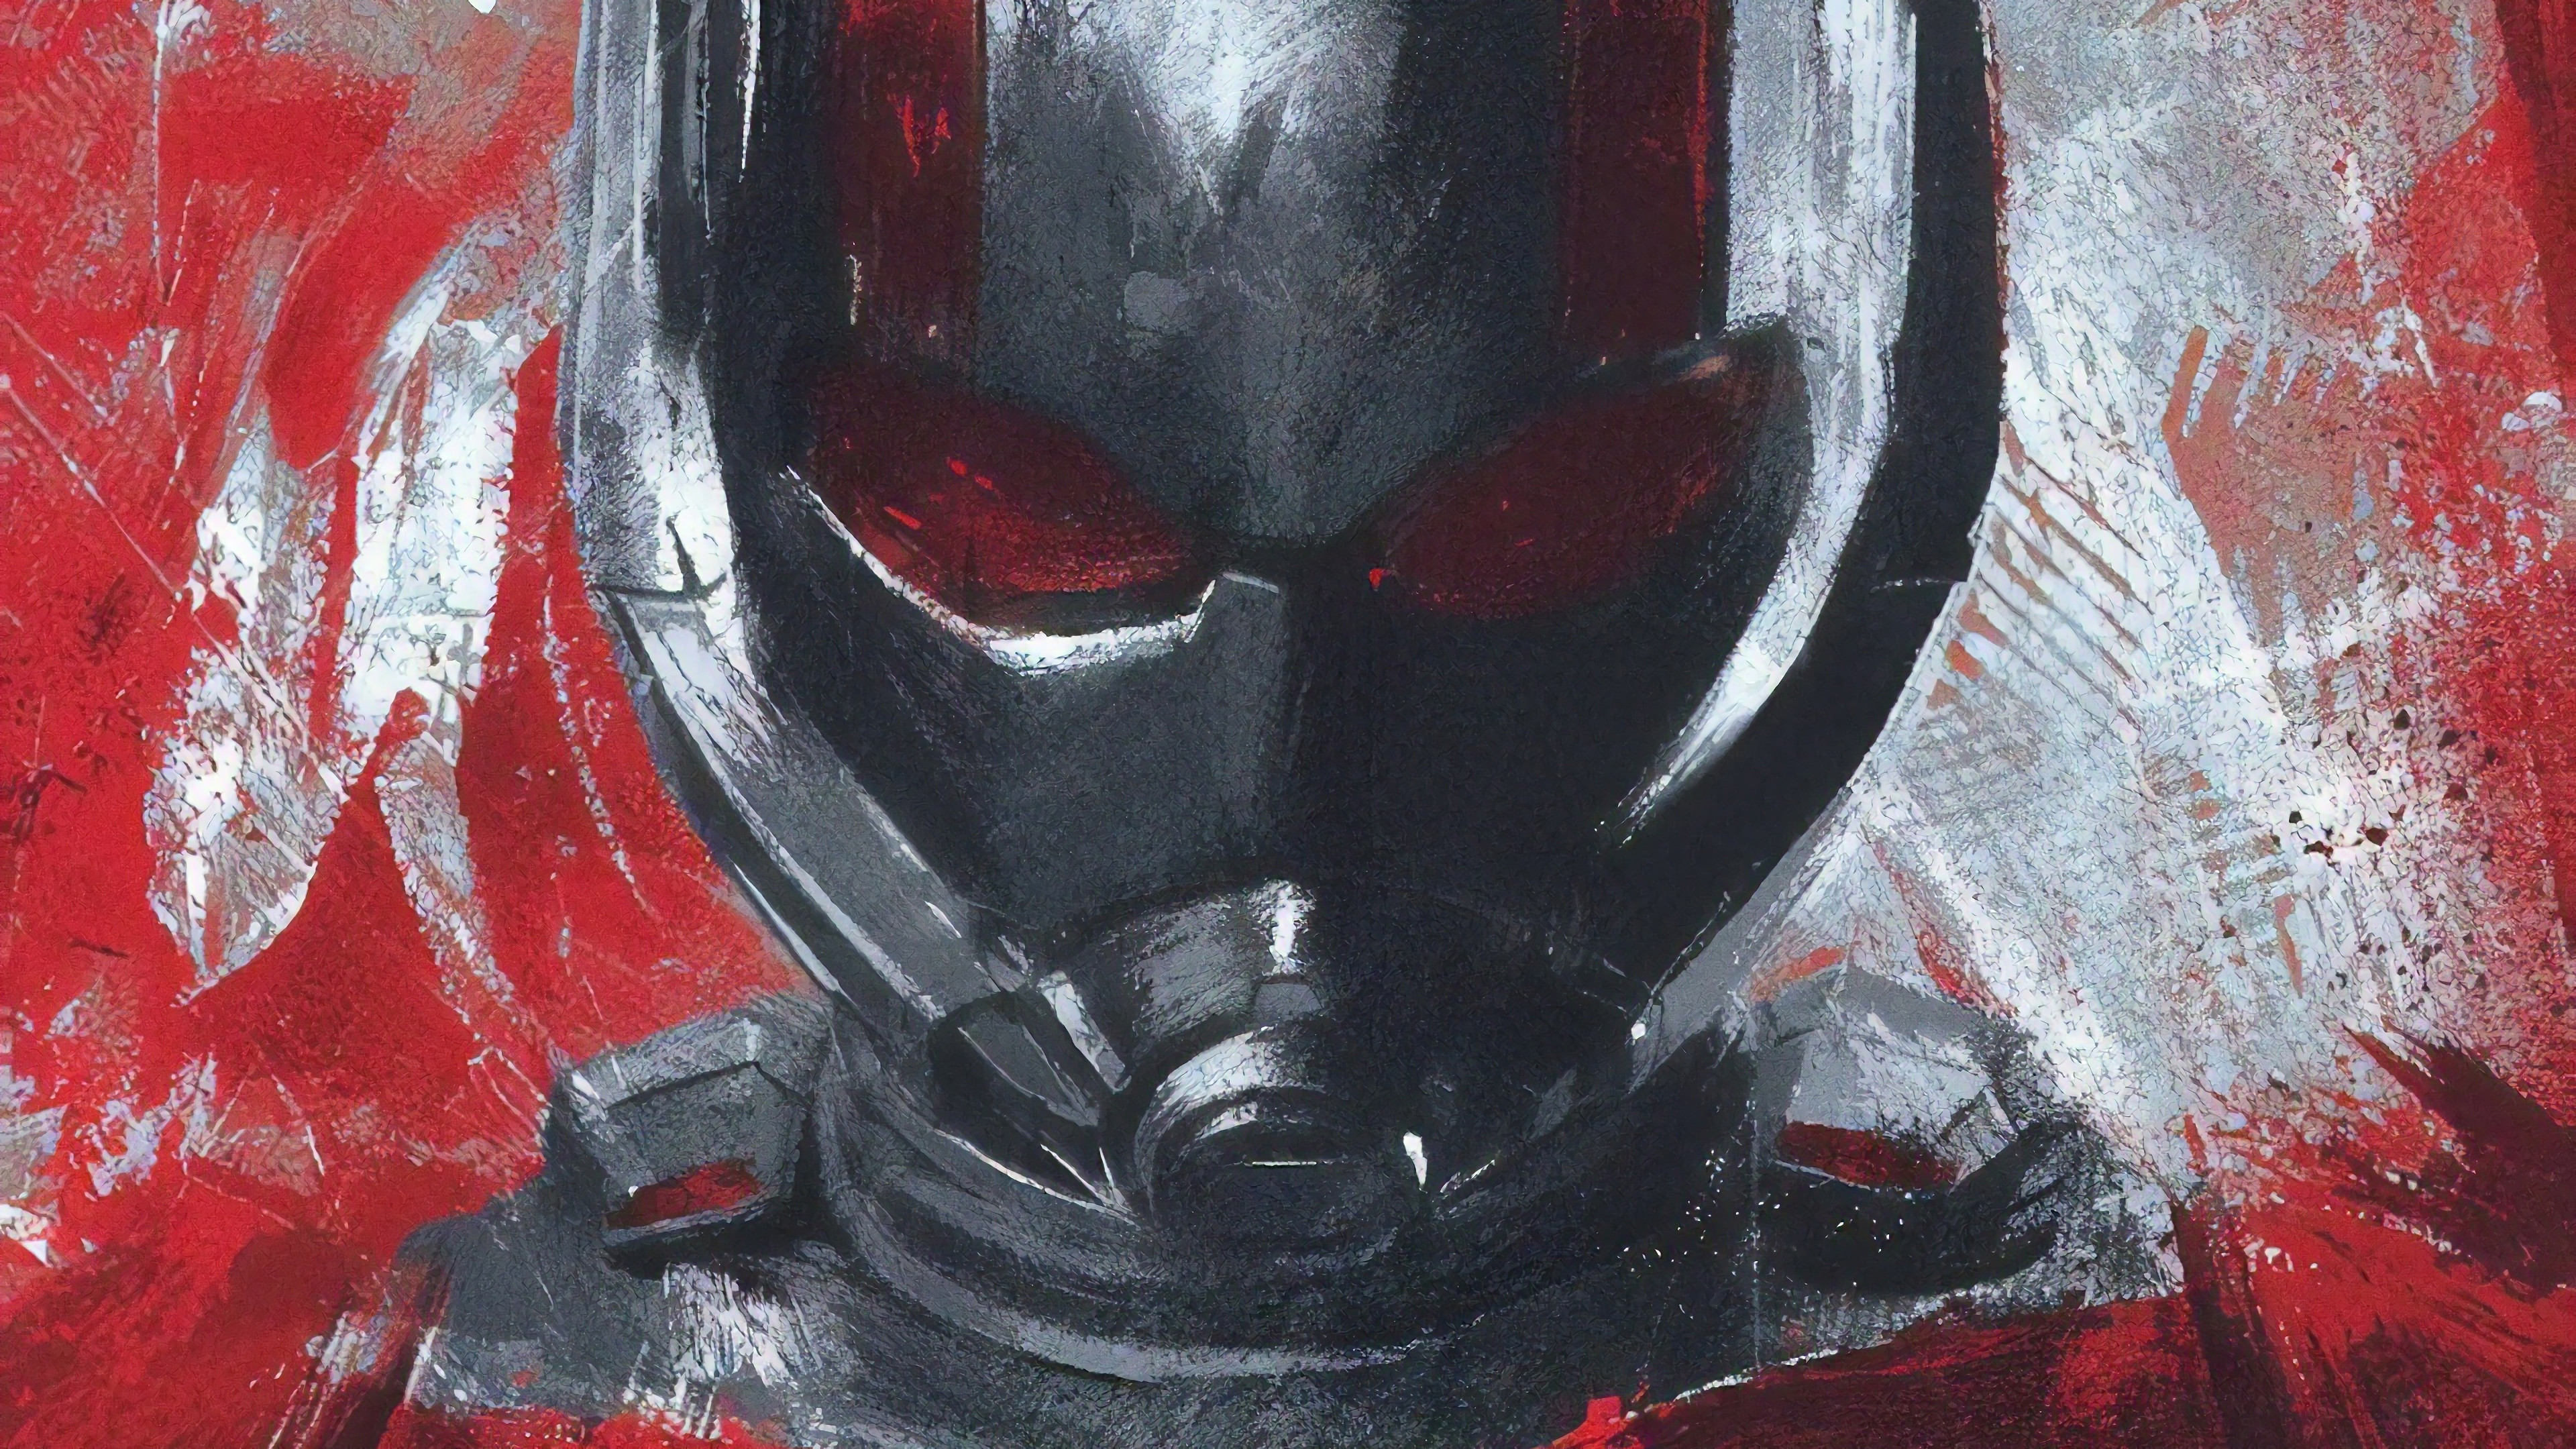 Download mobile wallpaper Movie, The Avengers, Ant Man, Avengers Endgame for free.